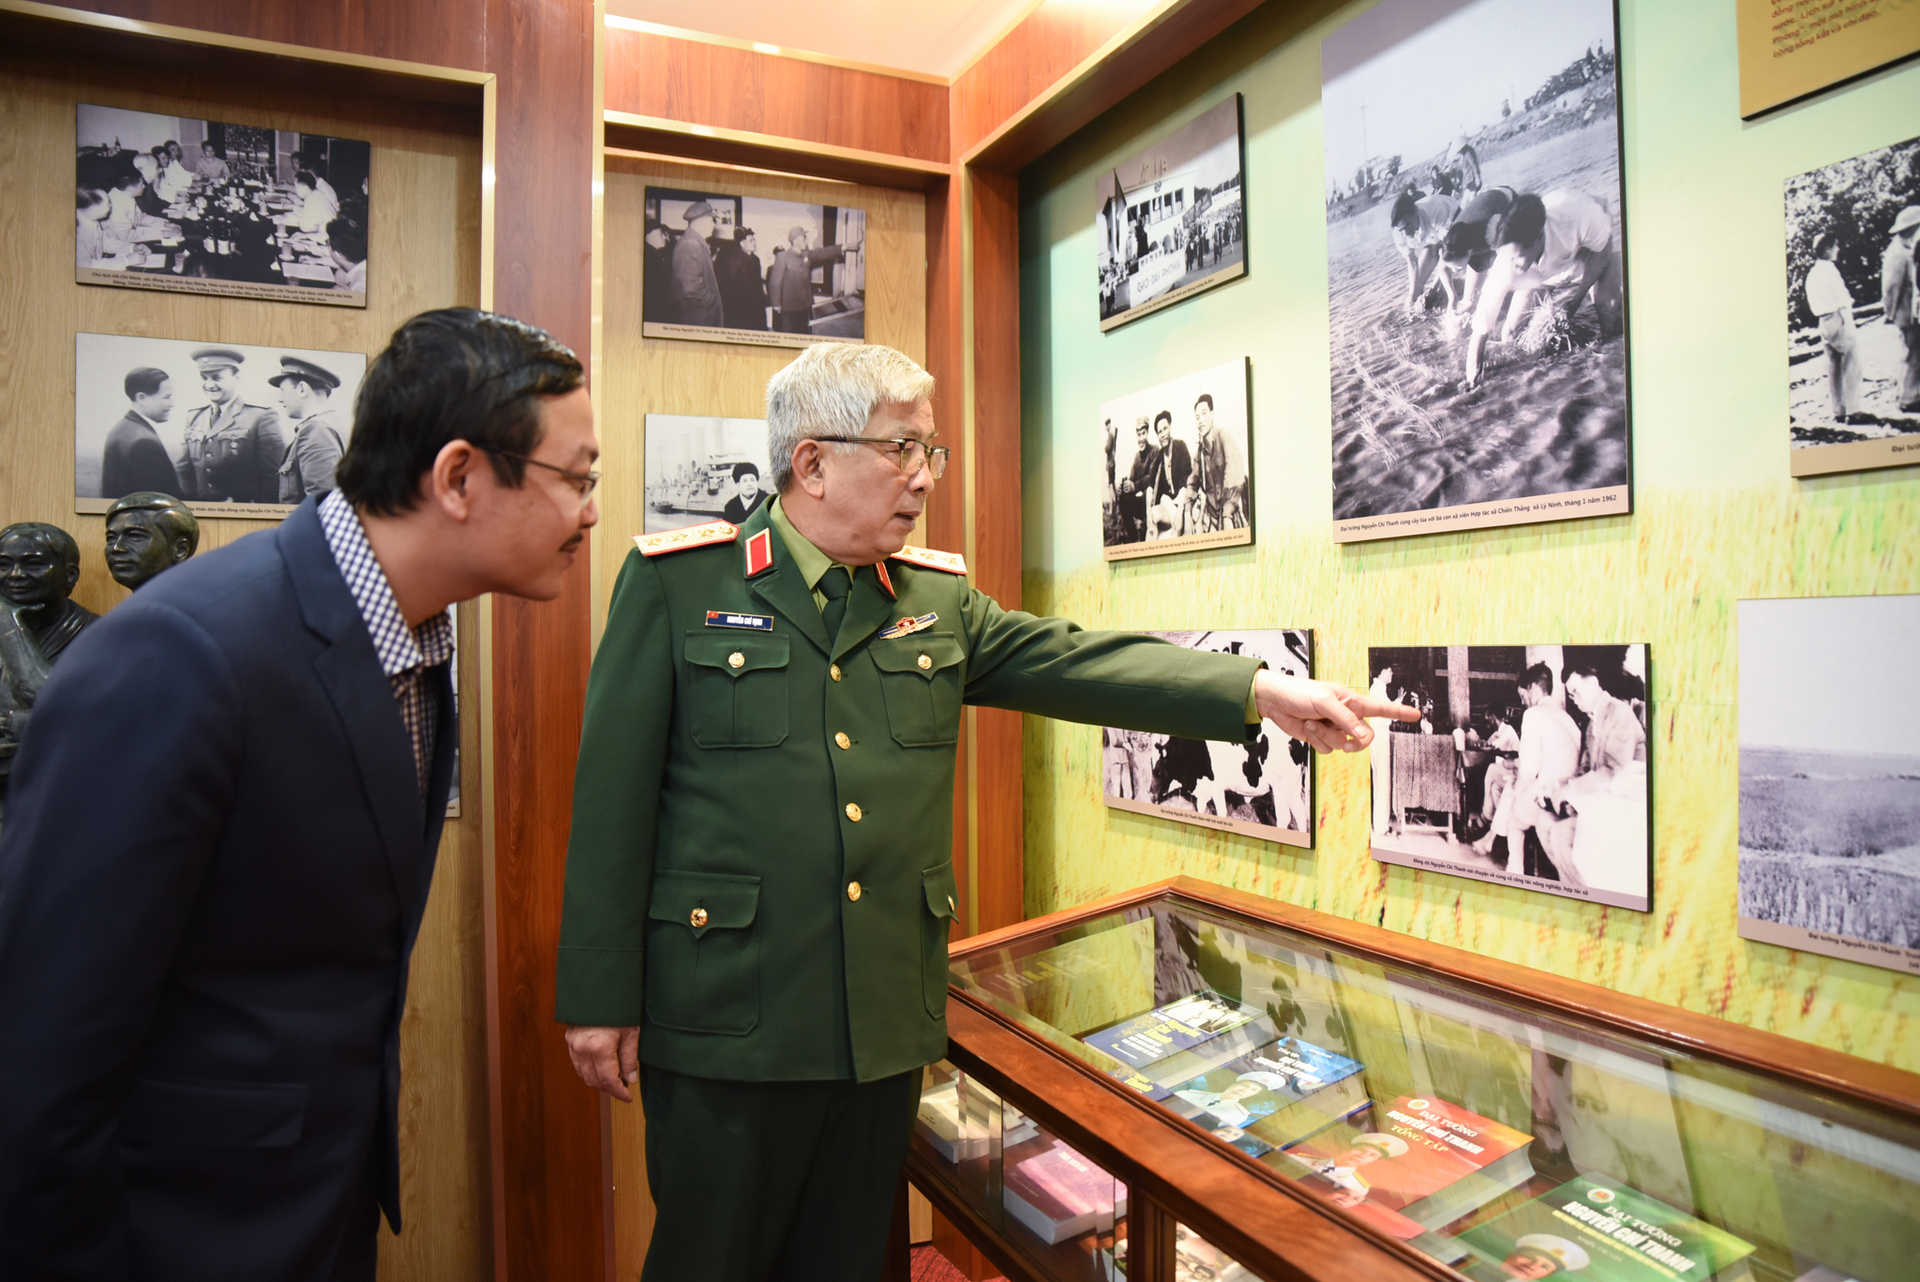 Thượng tướng Nguyễn Chí Vịnh giới thiệu những kỷ vật về cha mình - Đại tướng Nguyễn Chí Thanh. Ảnh: Tùng Đinh.